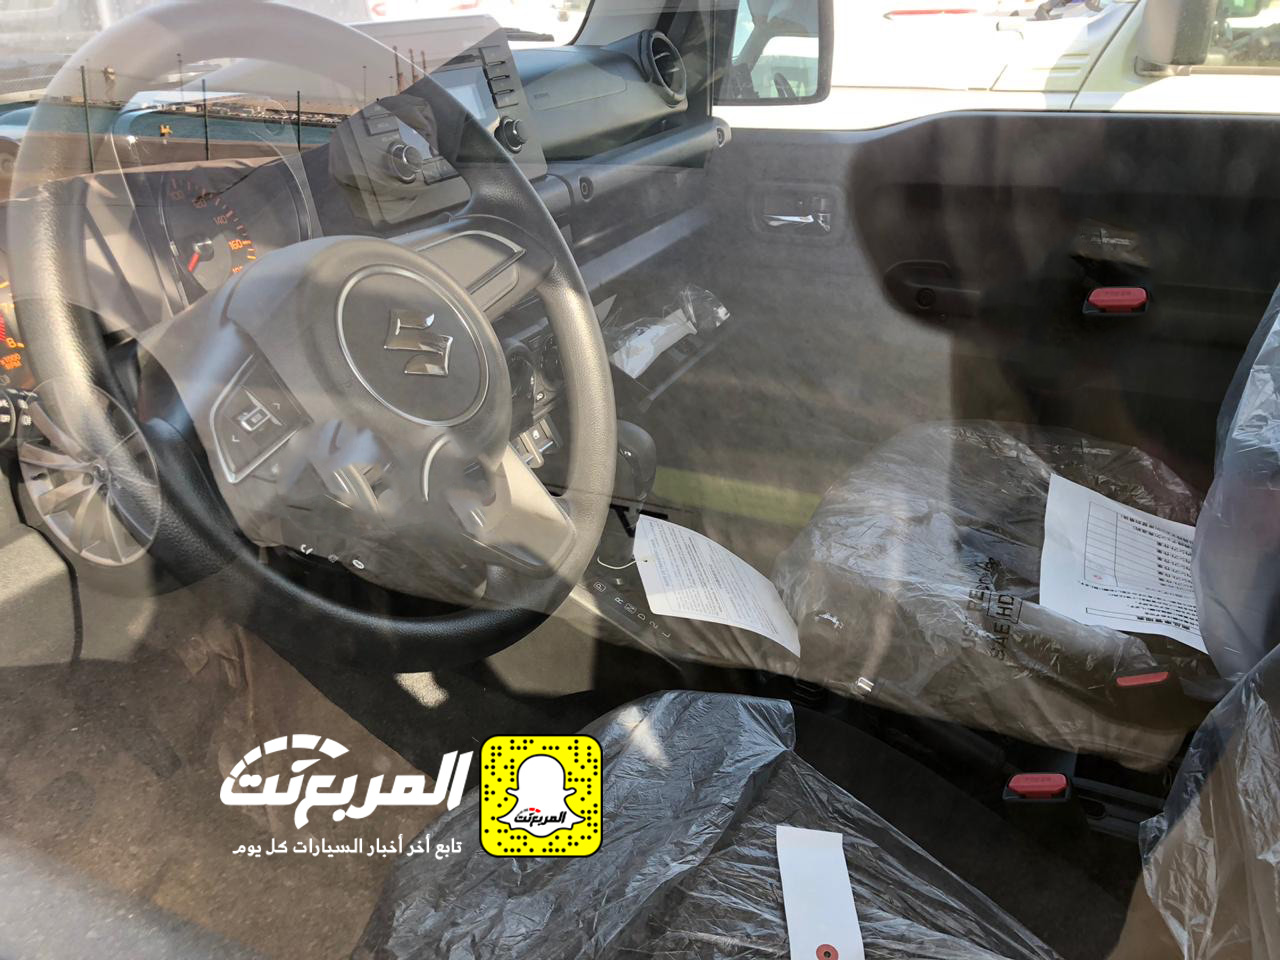 "بالصور" وصول سوزوكي جيمني 2019 الشكل الجديد الى السعودية + المواصفات Suzuki Jimny 20